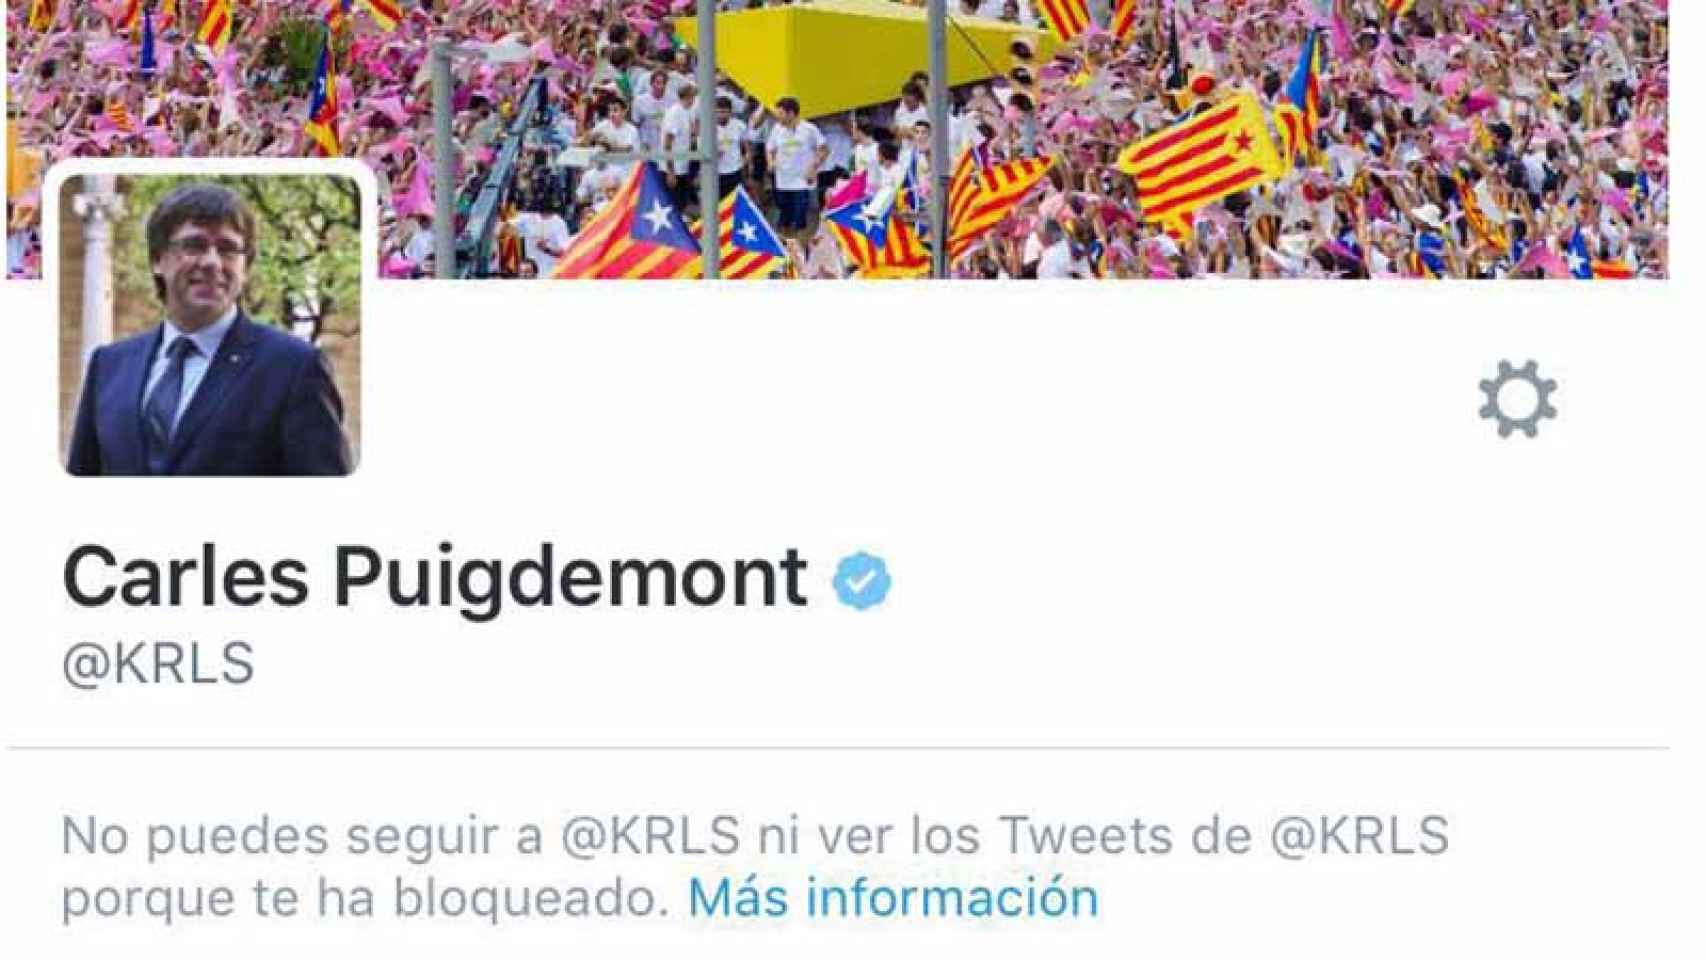 La cuenta de Twitter del presidente Carles Puigdemont bloquea a determinados usuarios. / CG